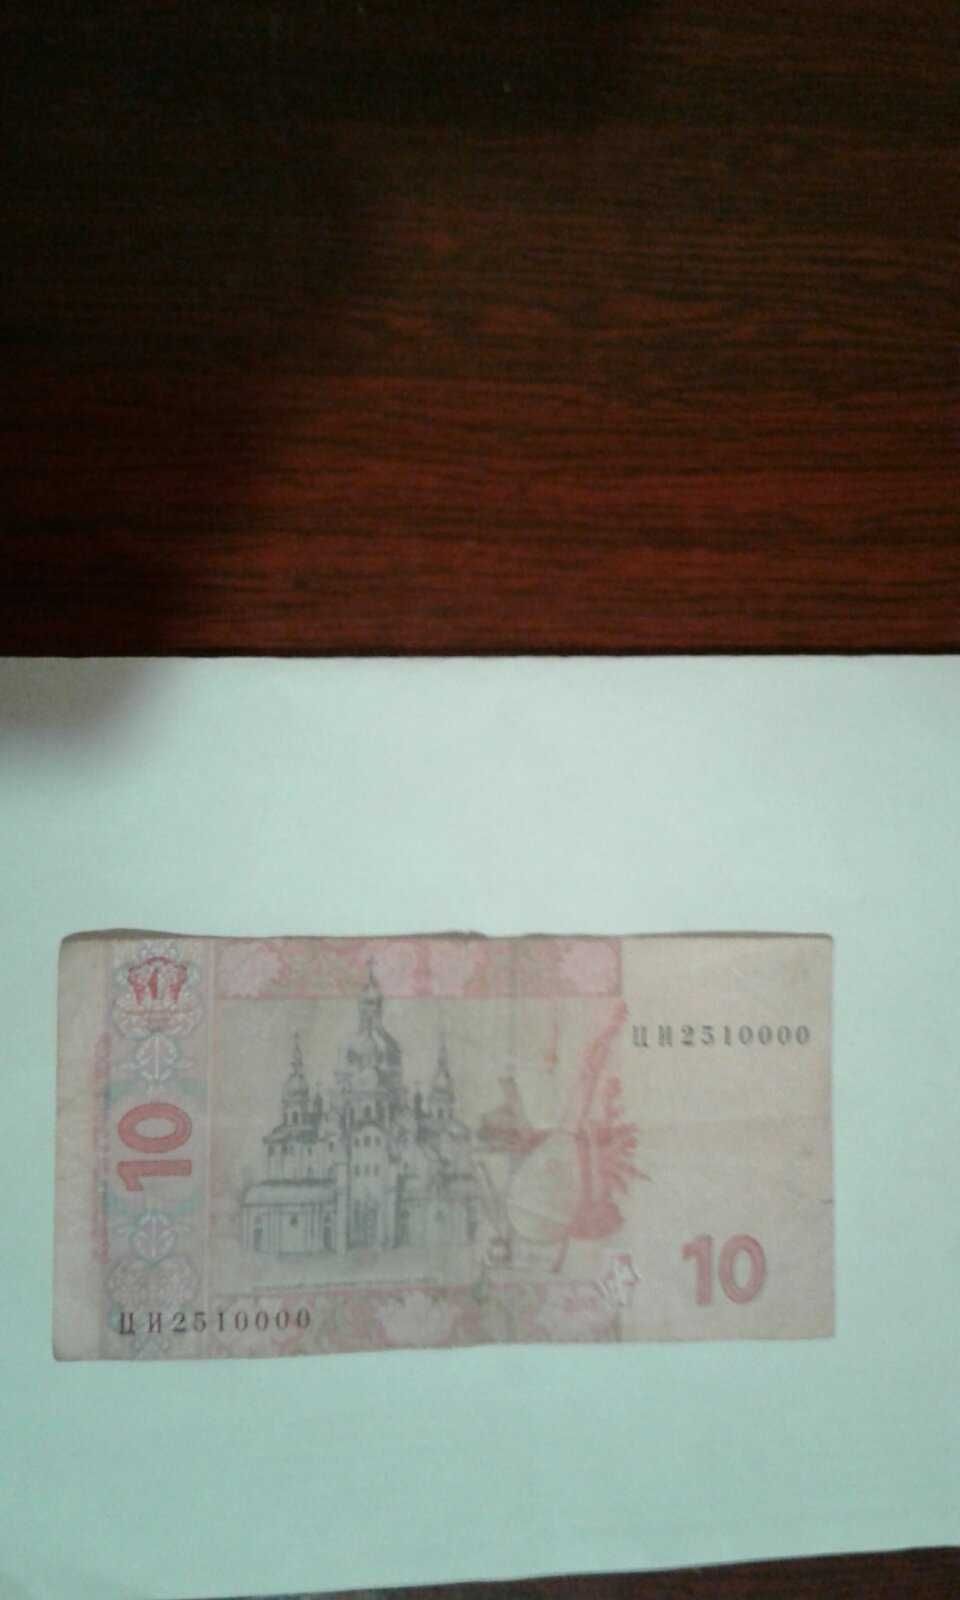 Продаю банкноту 10 гривень  2015 года с номером Ц И 2 5 1 0 0 0 0.